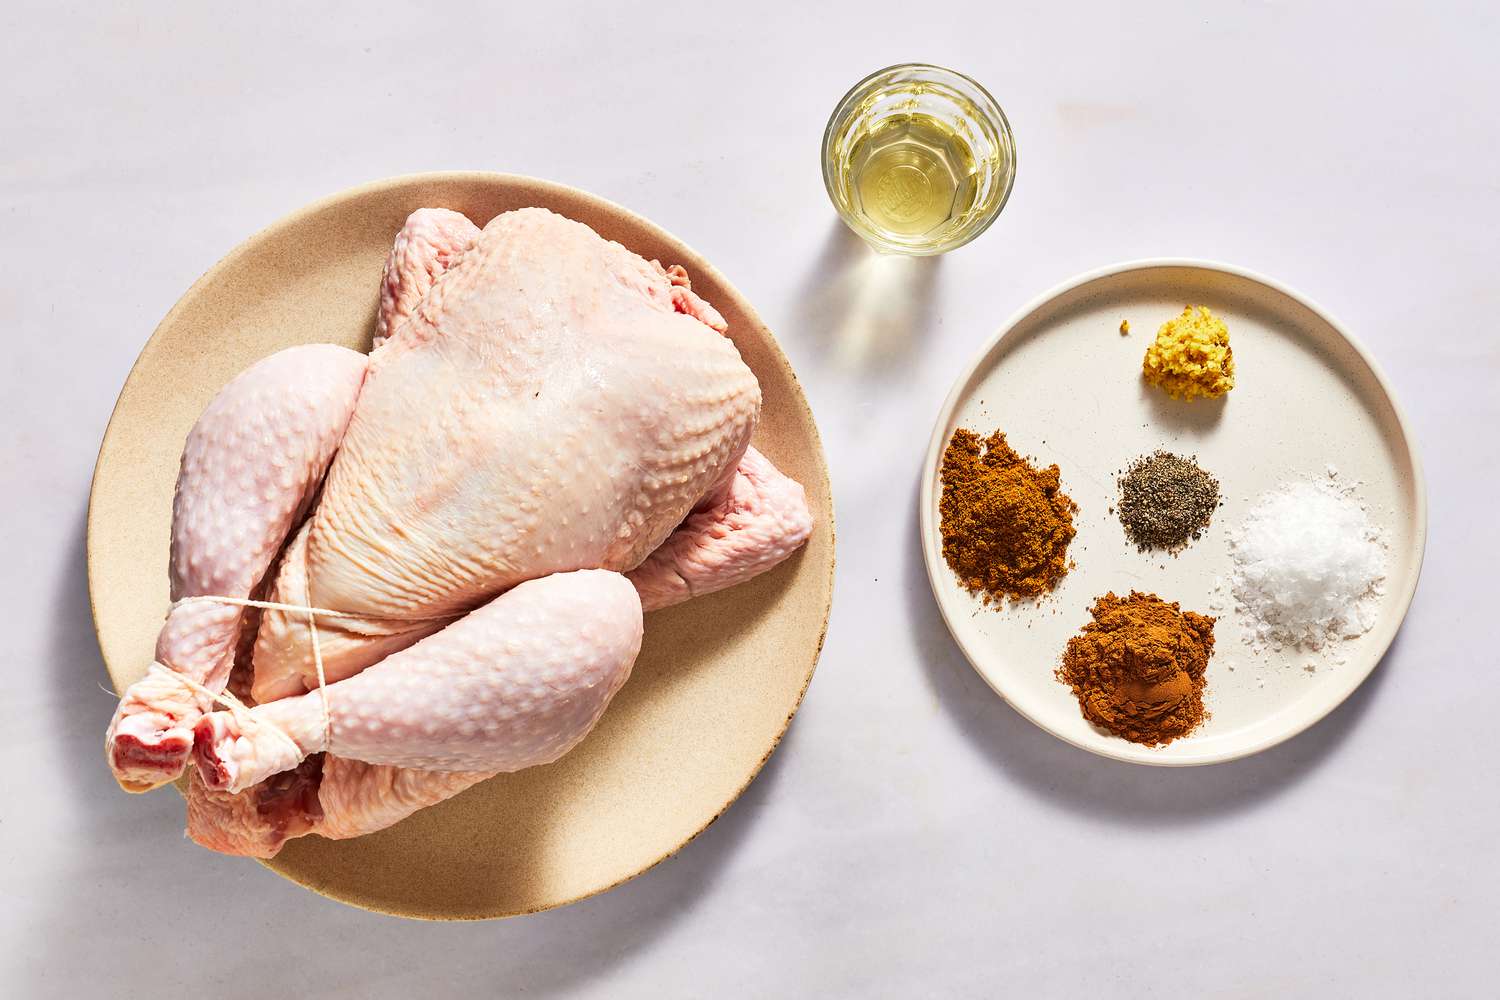 Ingredients to make divorce chicken